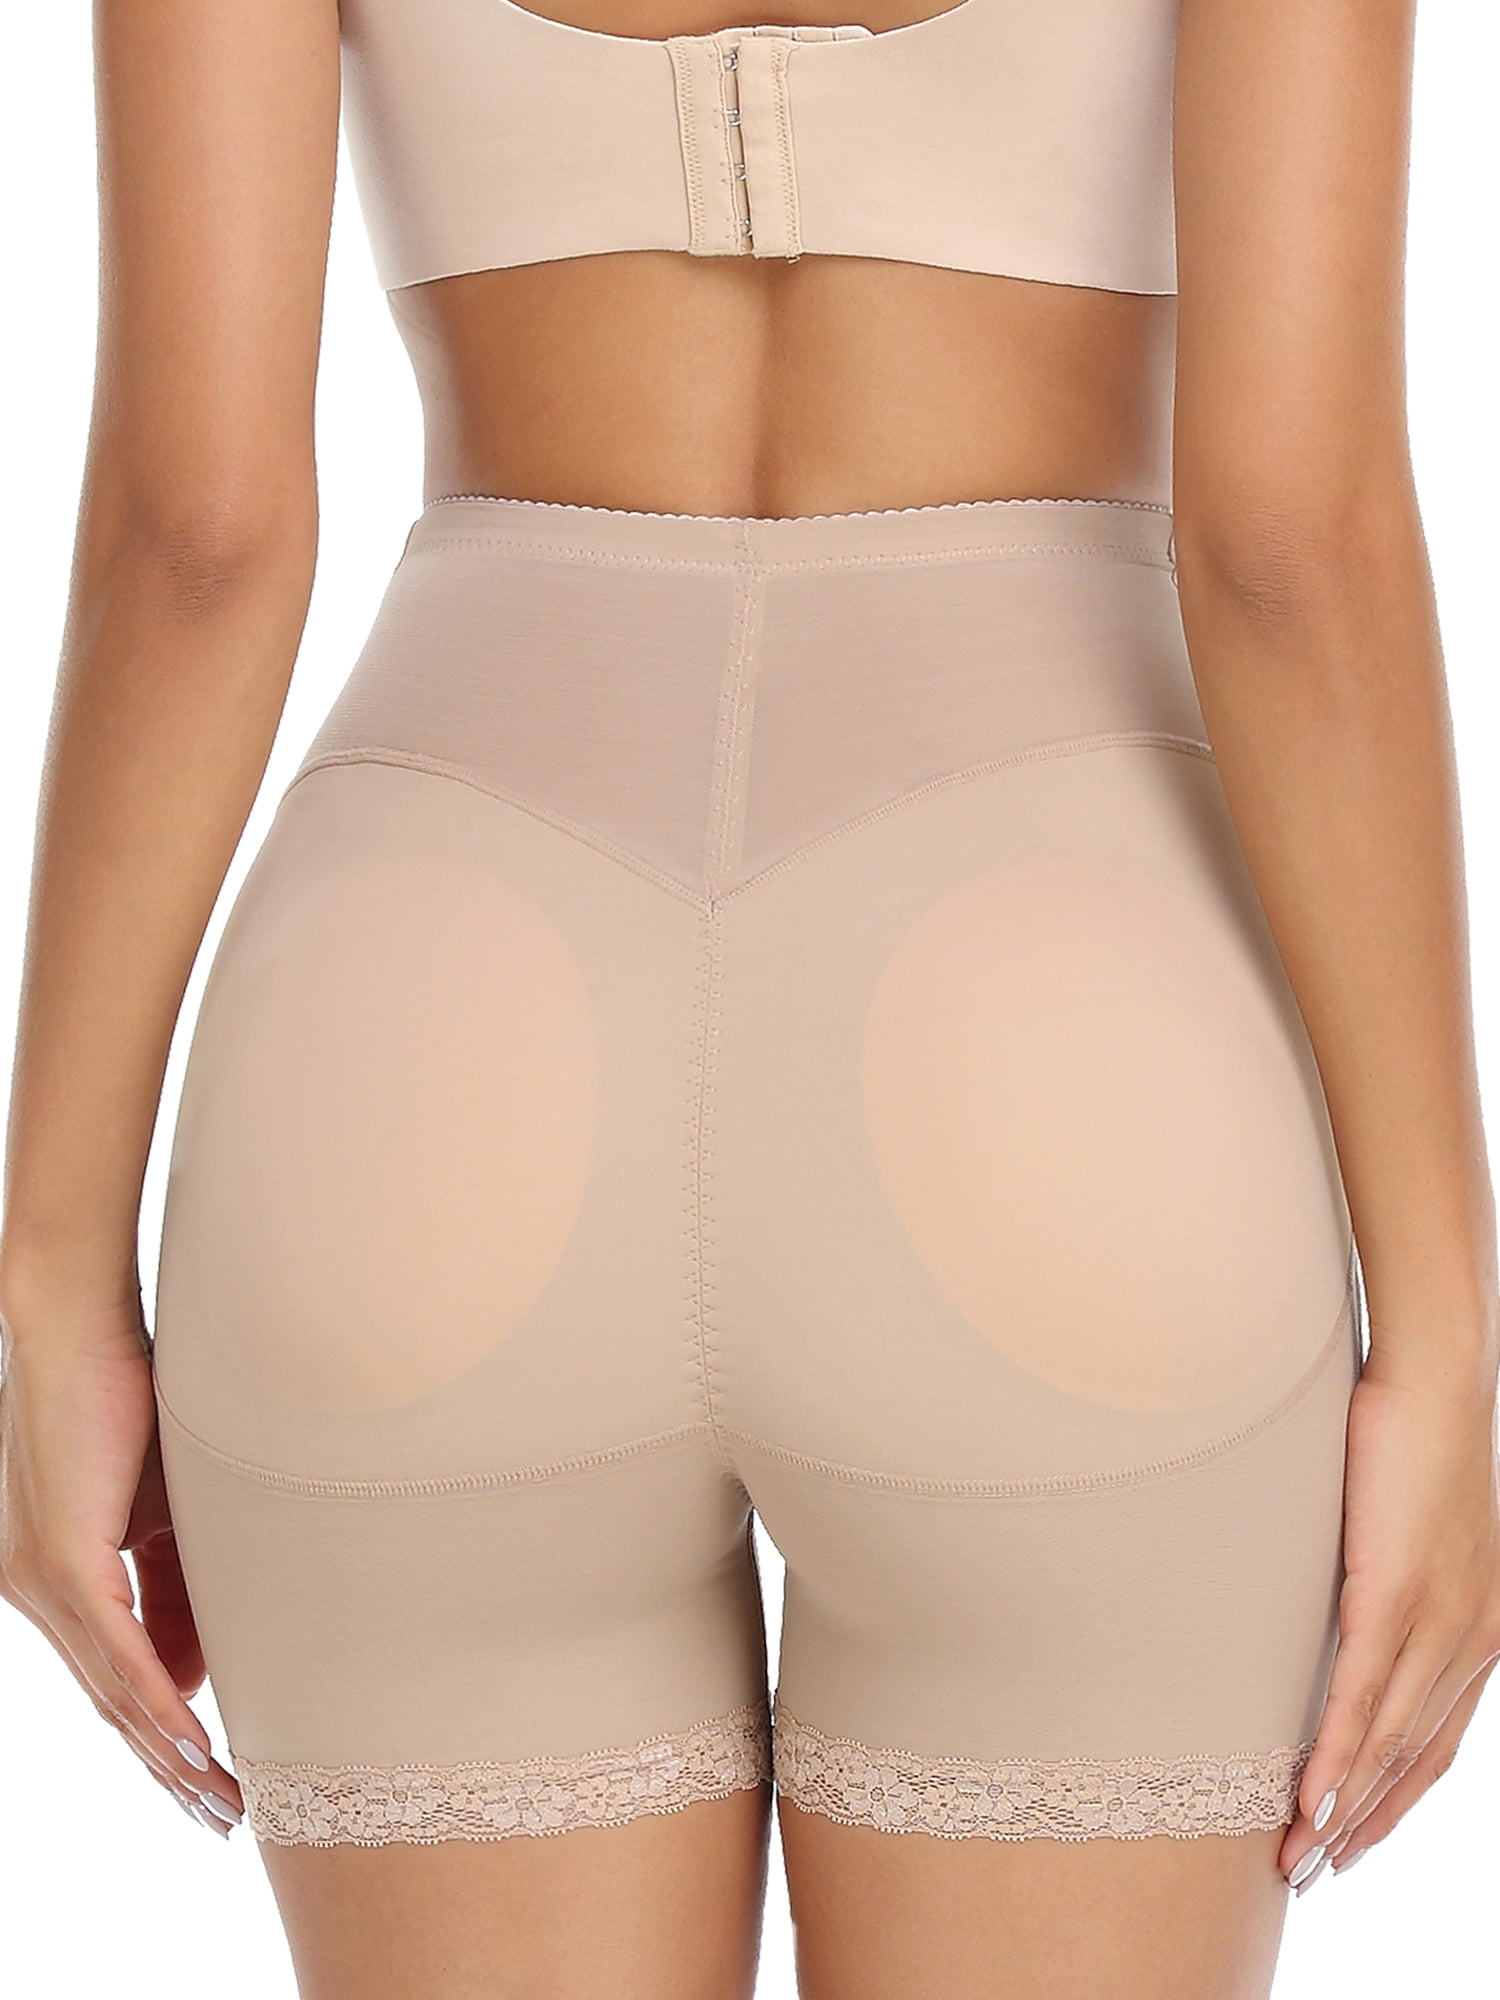 SHAPEVIVA Women Shapewear Control Panties Body Shaper Butt Lifter Padded  Hip Enhancer Seamless Underwear Hiigh Waist Shorts